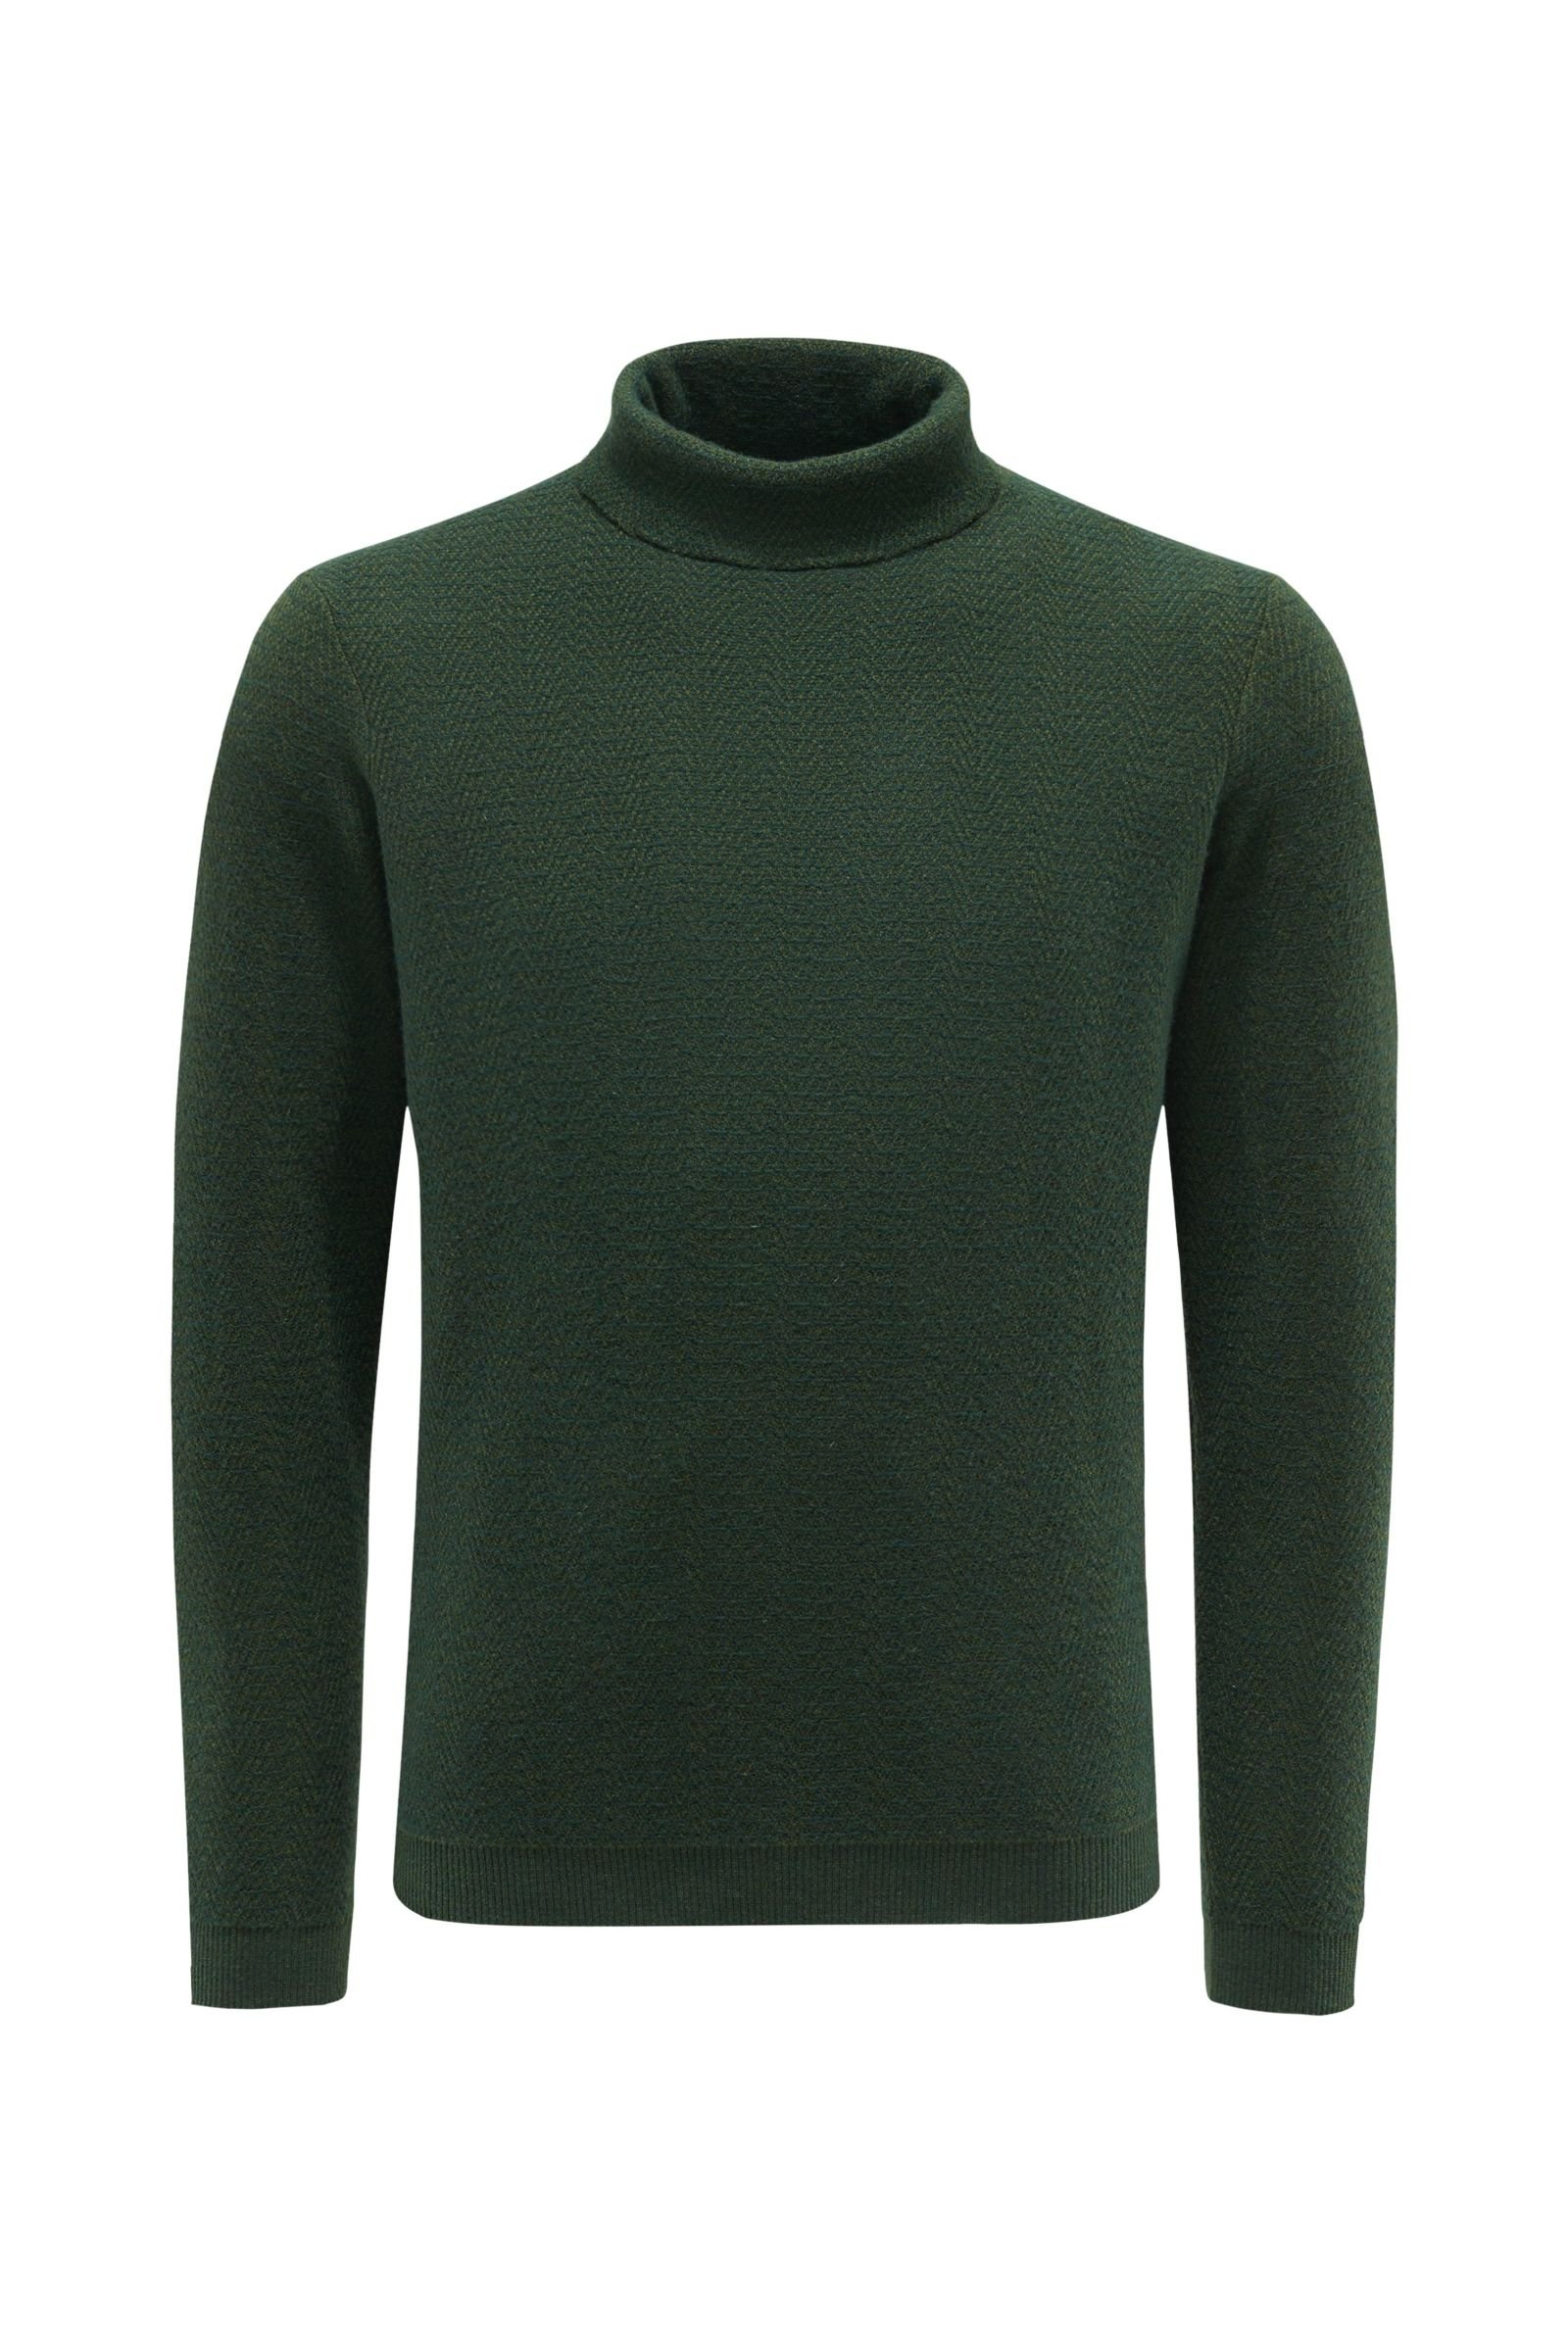 Cashmere turtleneck jumper 'Dolce Vita' dark green patterned